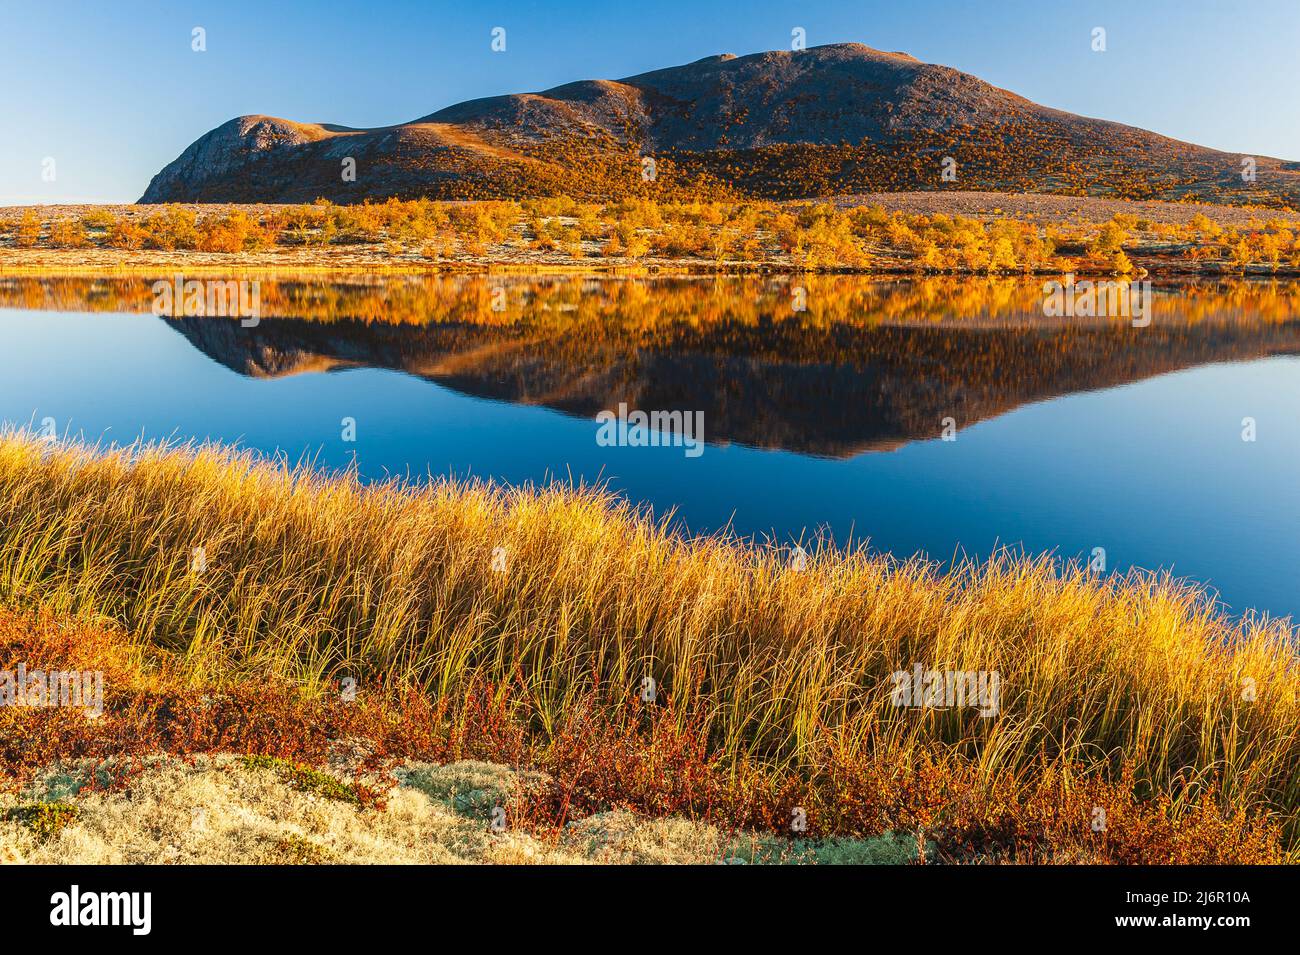 Mountain reflection on calm lake at autumn, Norway. Stock Photo